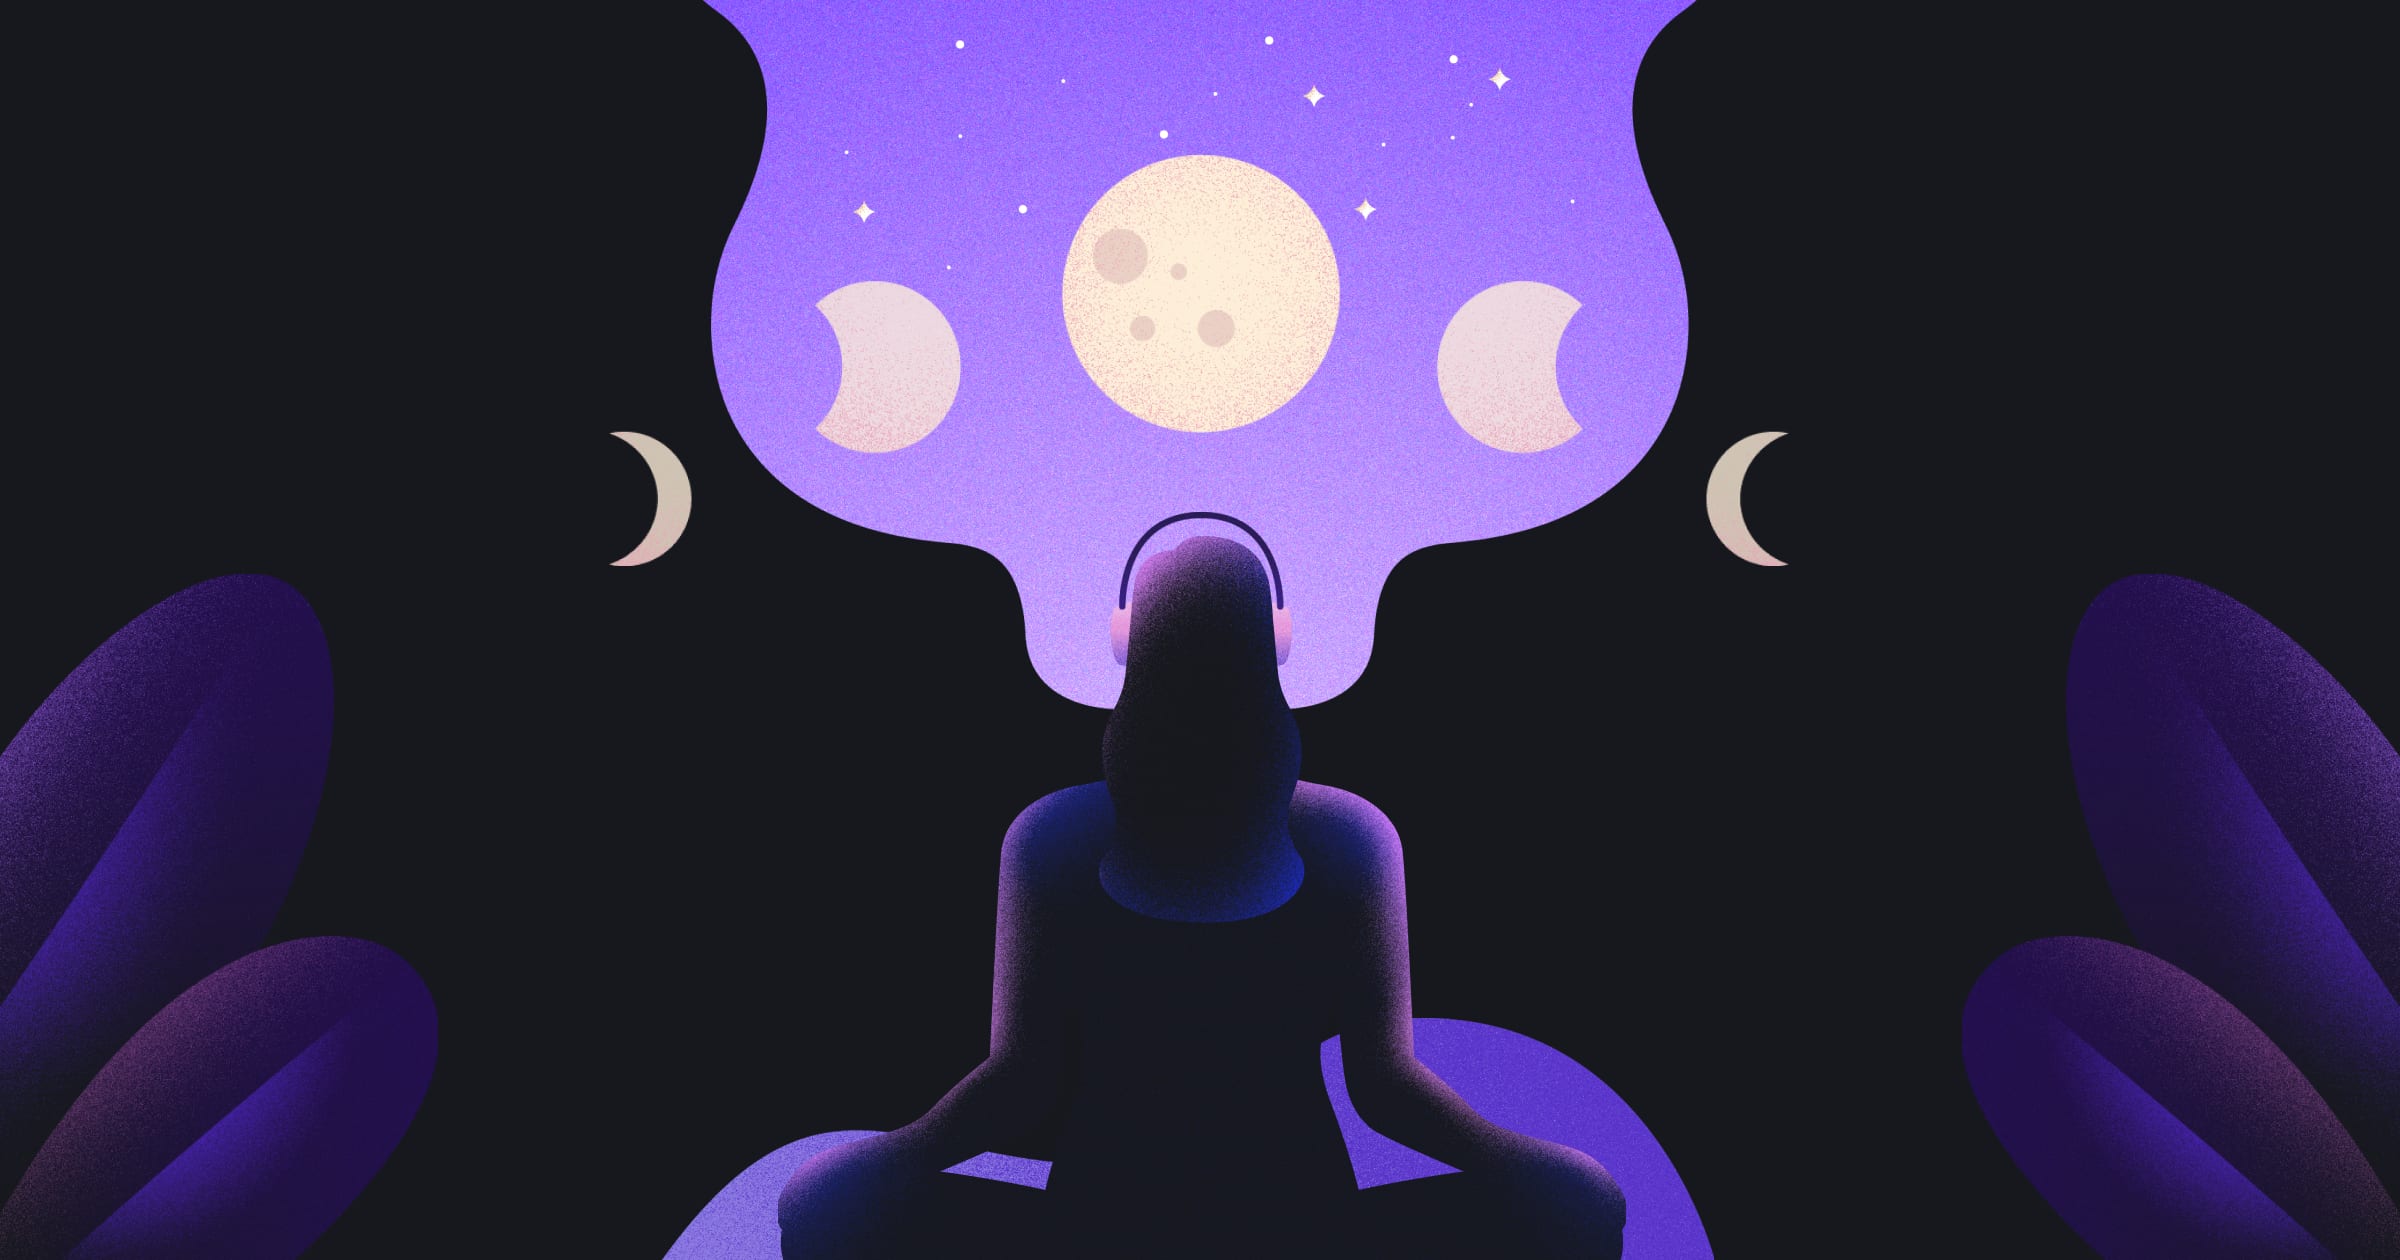 Moonly-App verstärkt ihre globale Präsenz mit deutschsprachigen Meditationen